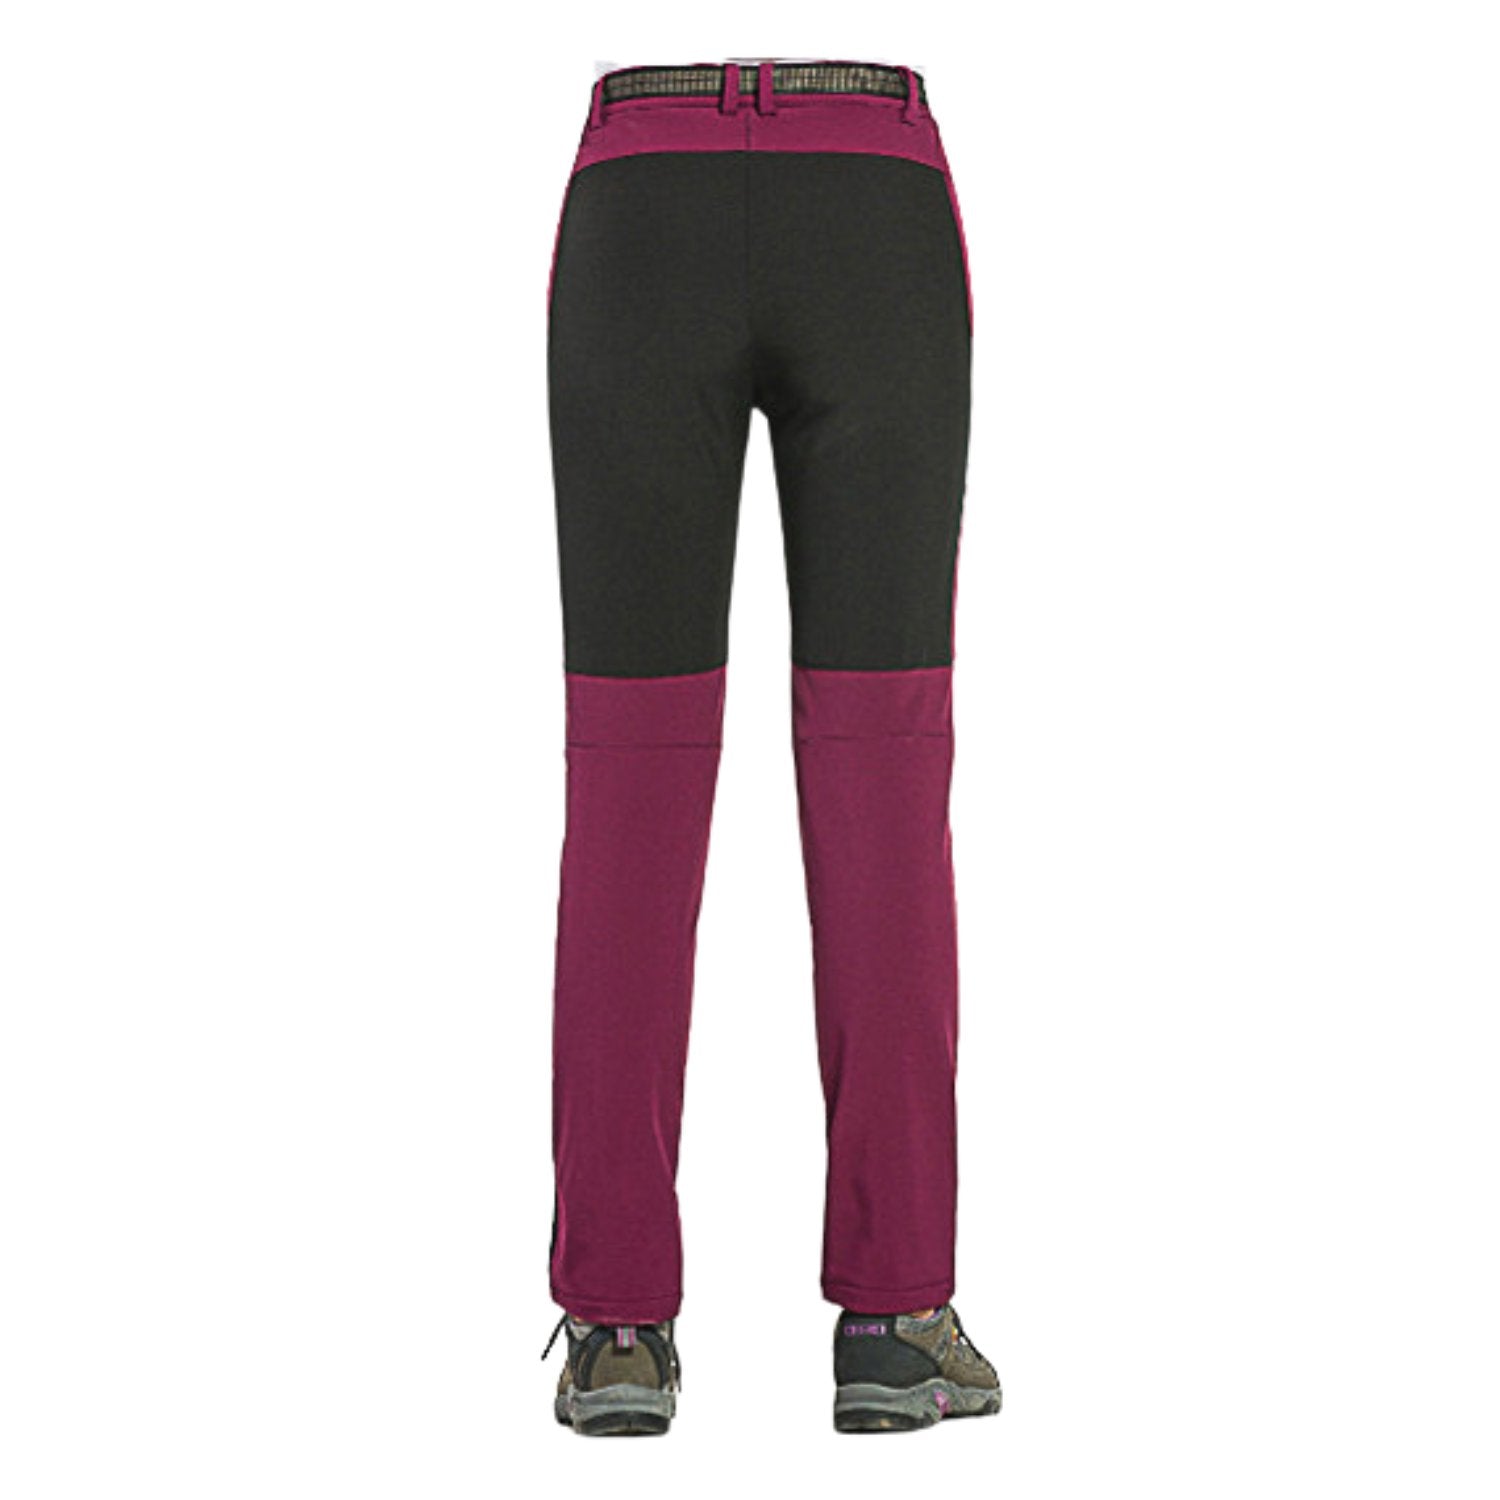 Buy Gokyo K2 Cold Weather Trekking & Outdoor Pants in Wine - Women | Trekking & Hiking Pants at Gokyo Outdoor Clothing & Gear